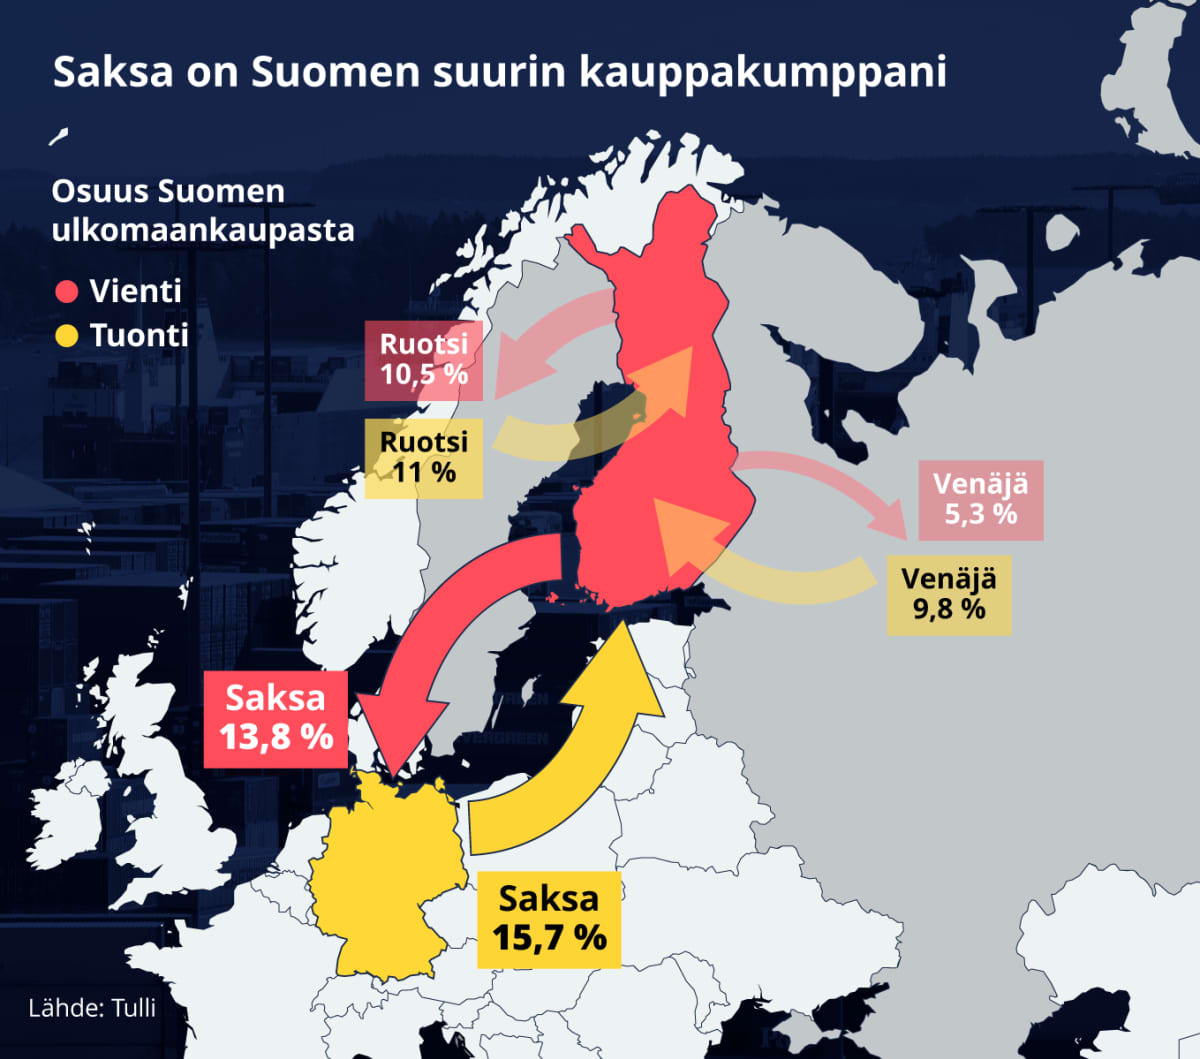 Saksan, Ruotsin ja Venäjän osuus Suomen viennistä ja tuonnista kartalla. Saksan osuus Suomen viennistä ja tuonnista on suurin, viennistä 13,8 % ja tuonnista 15,7 %.